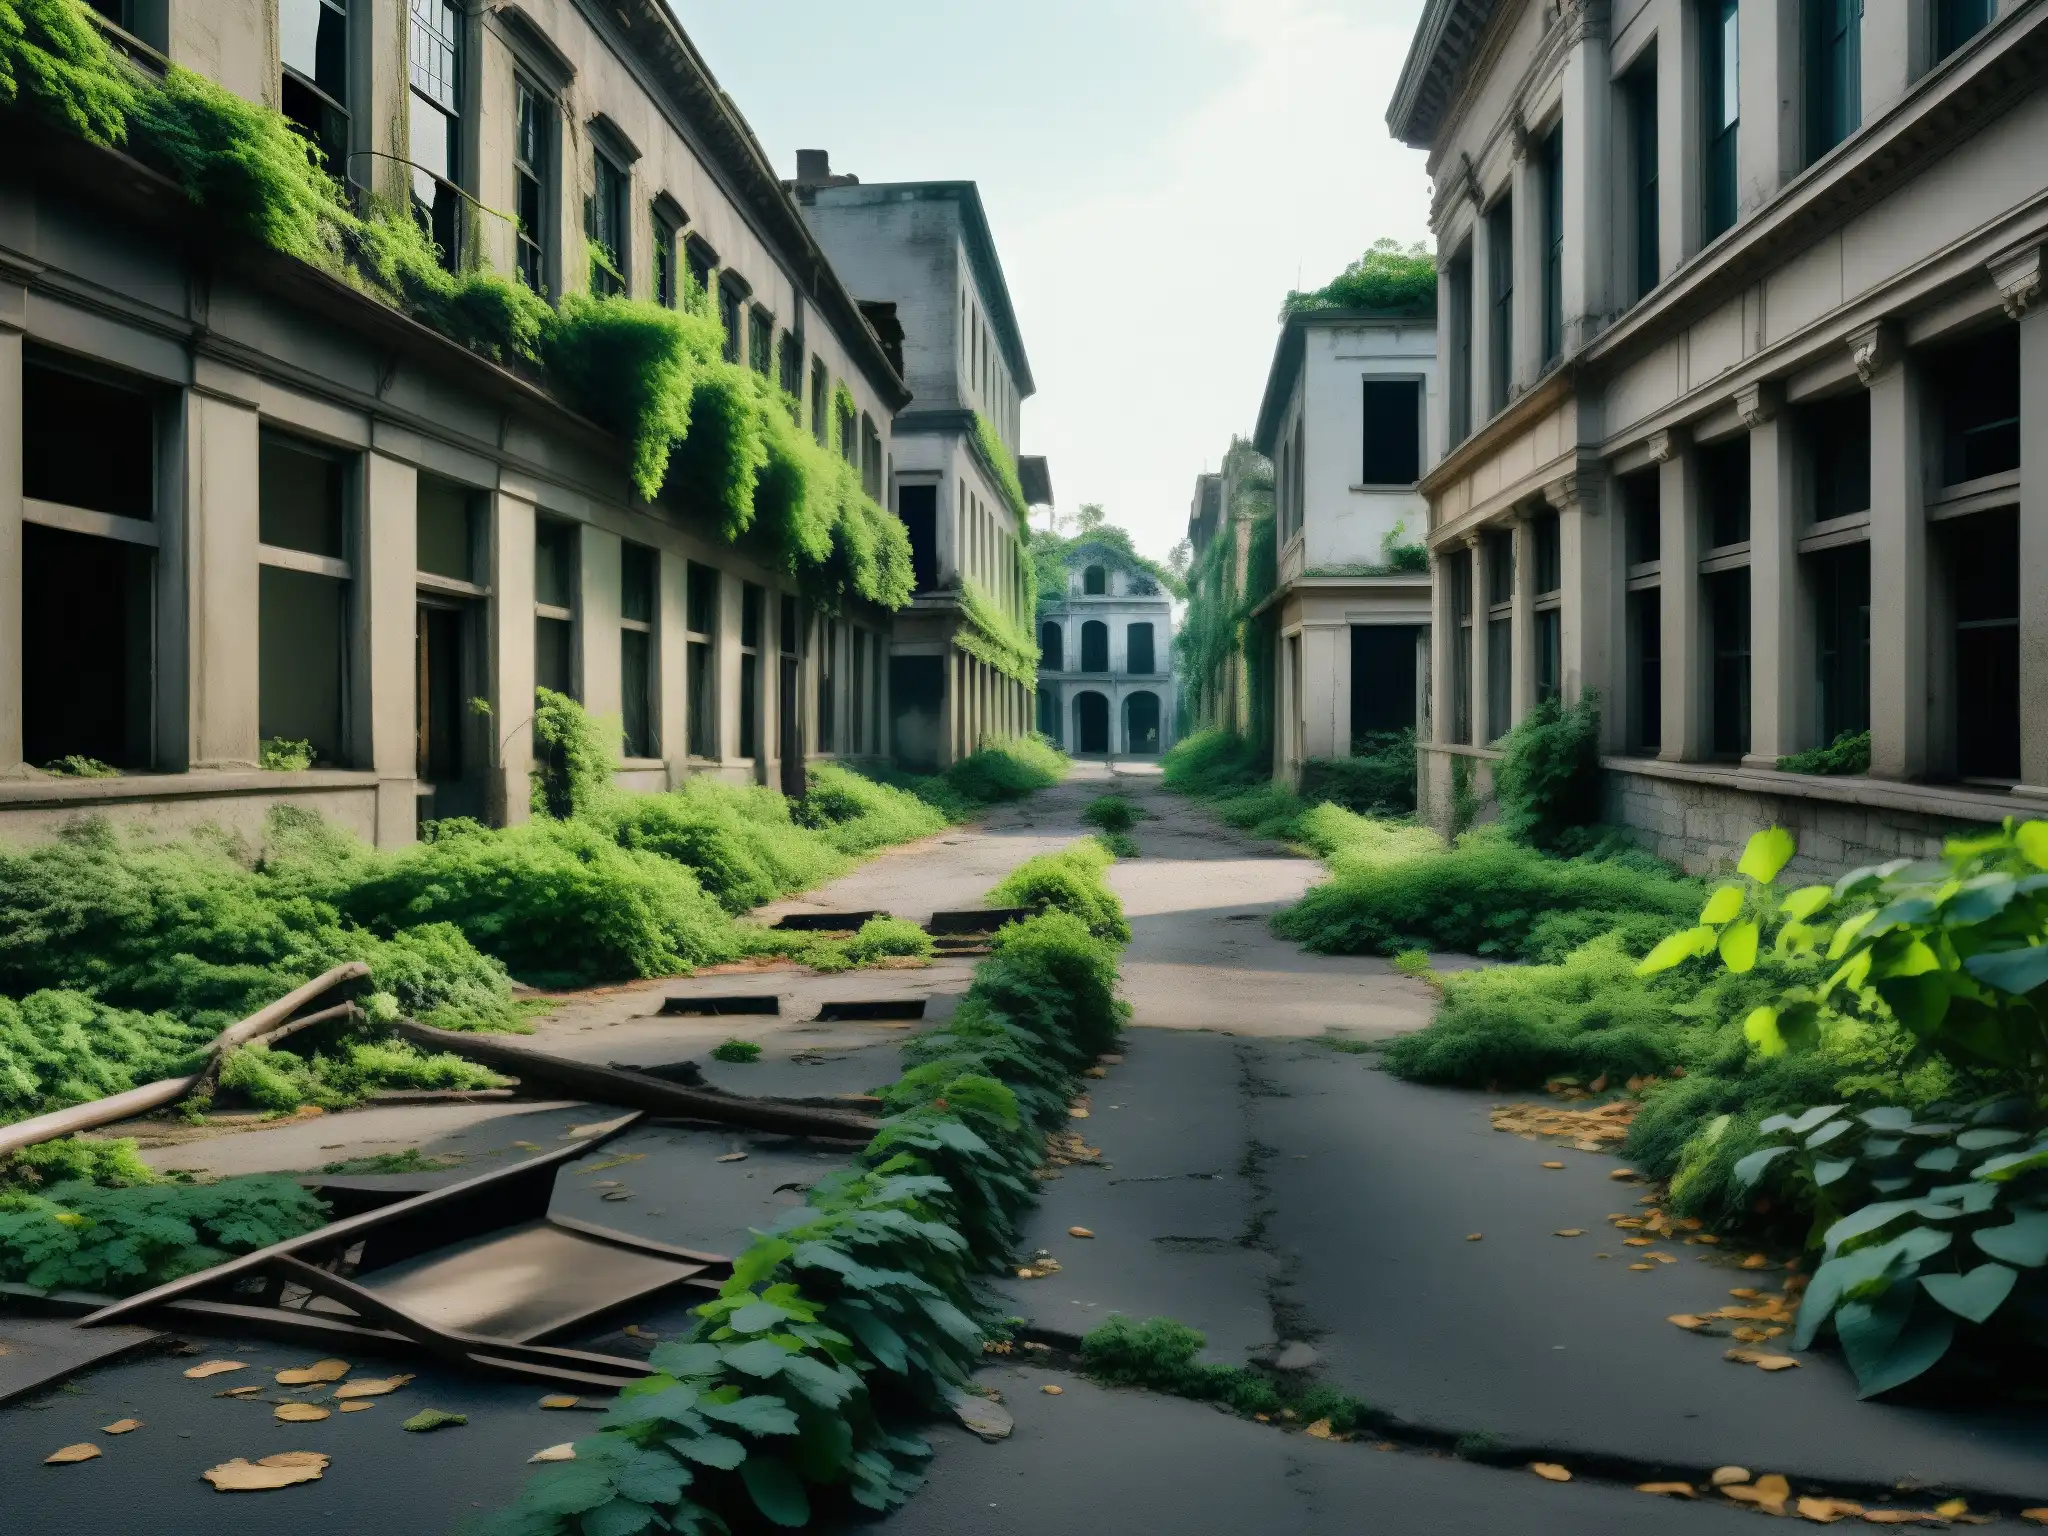 Una calle abandonada, invadida por la naturaleza, con edificios en ruinas